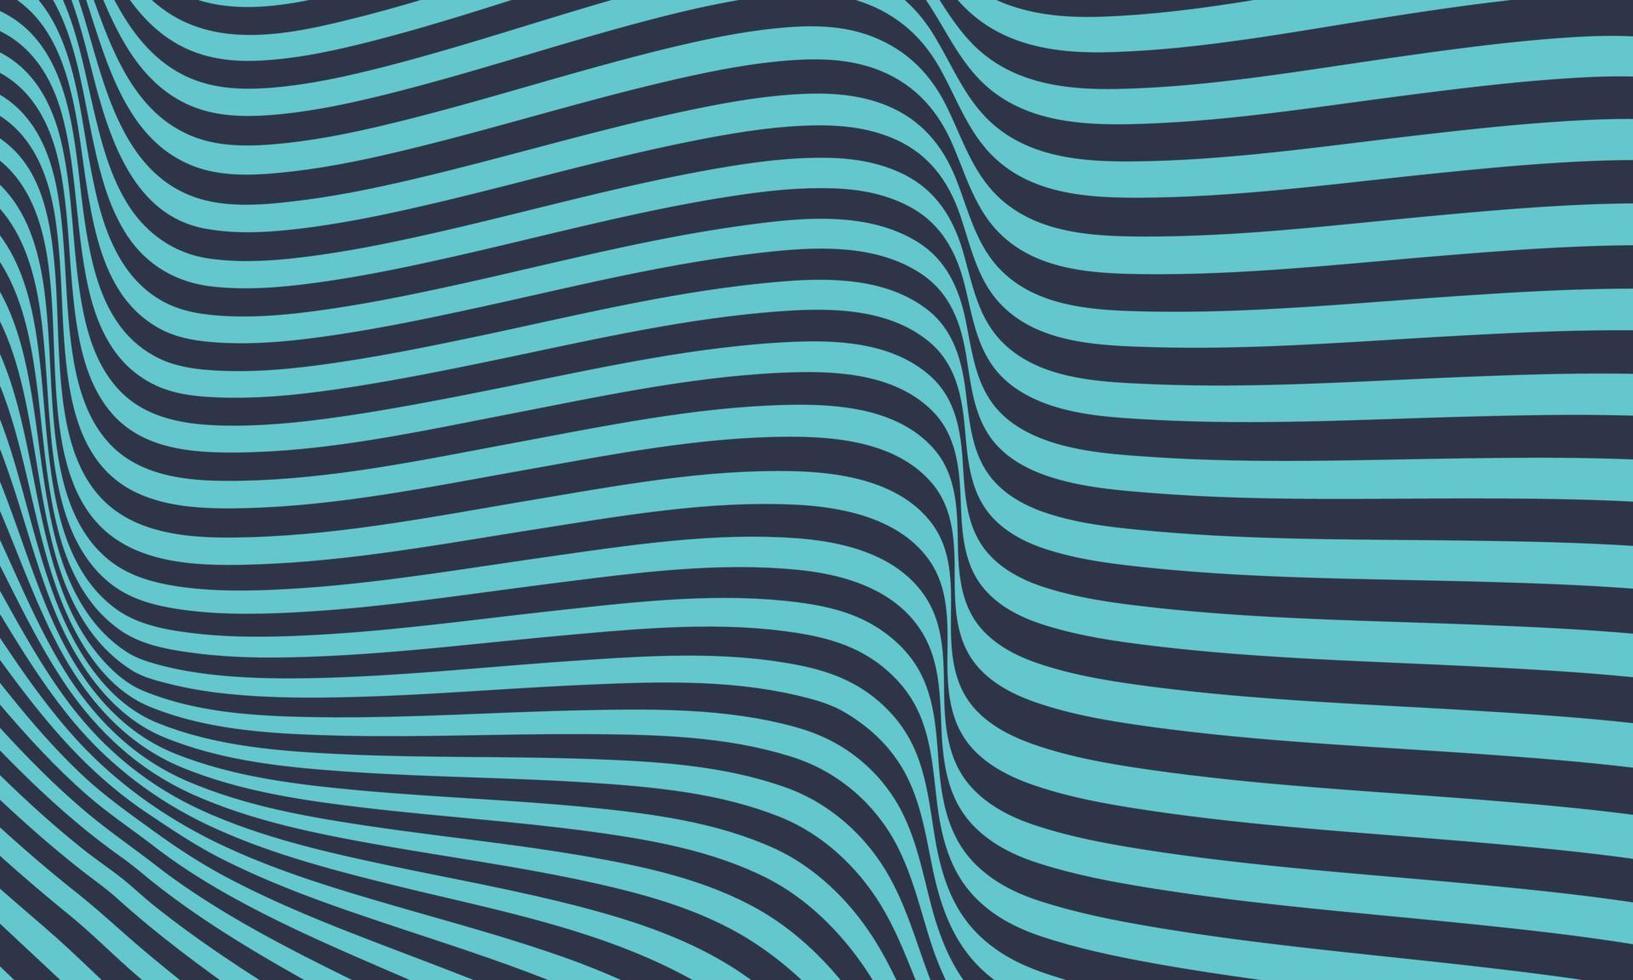 abstrakte kreative wellenförmige optische Täuschung Wallpaper Poster Hintergrund asiatische Illustration Ozean vektor